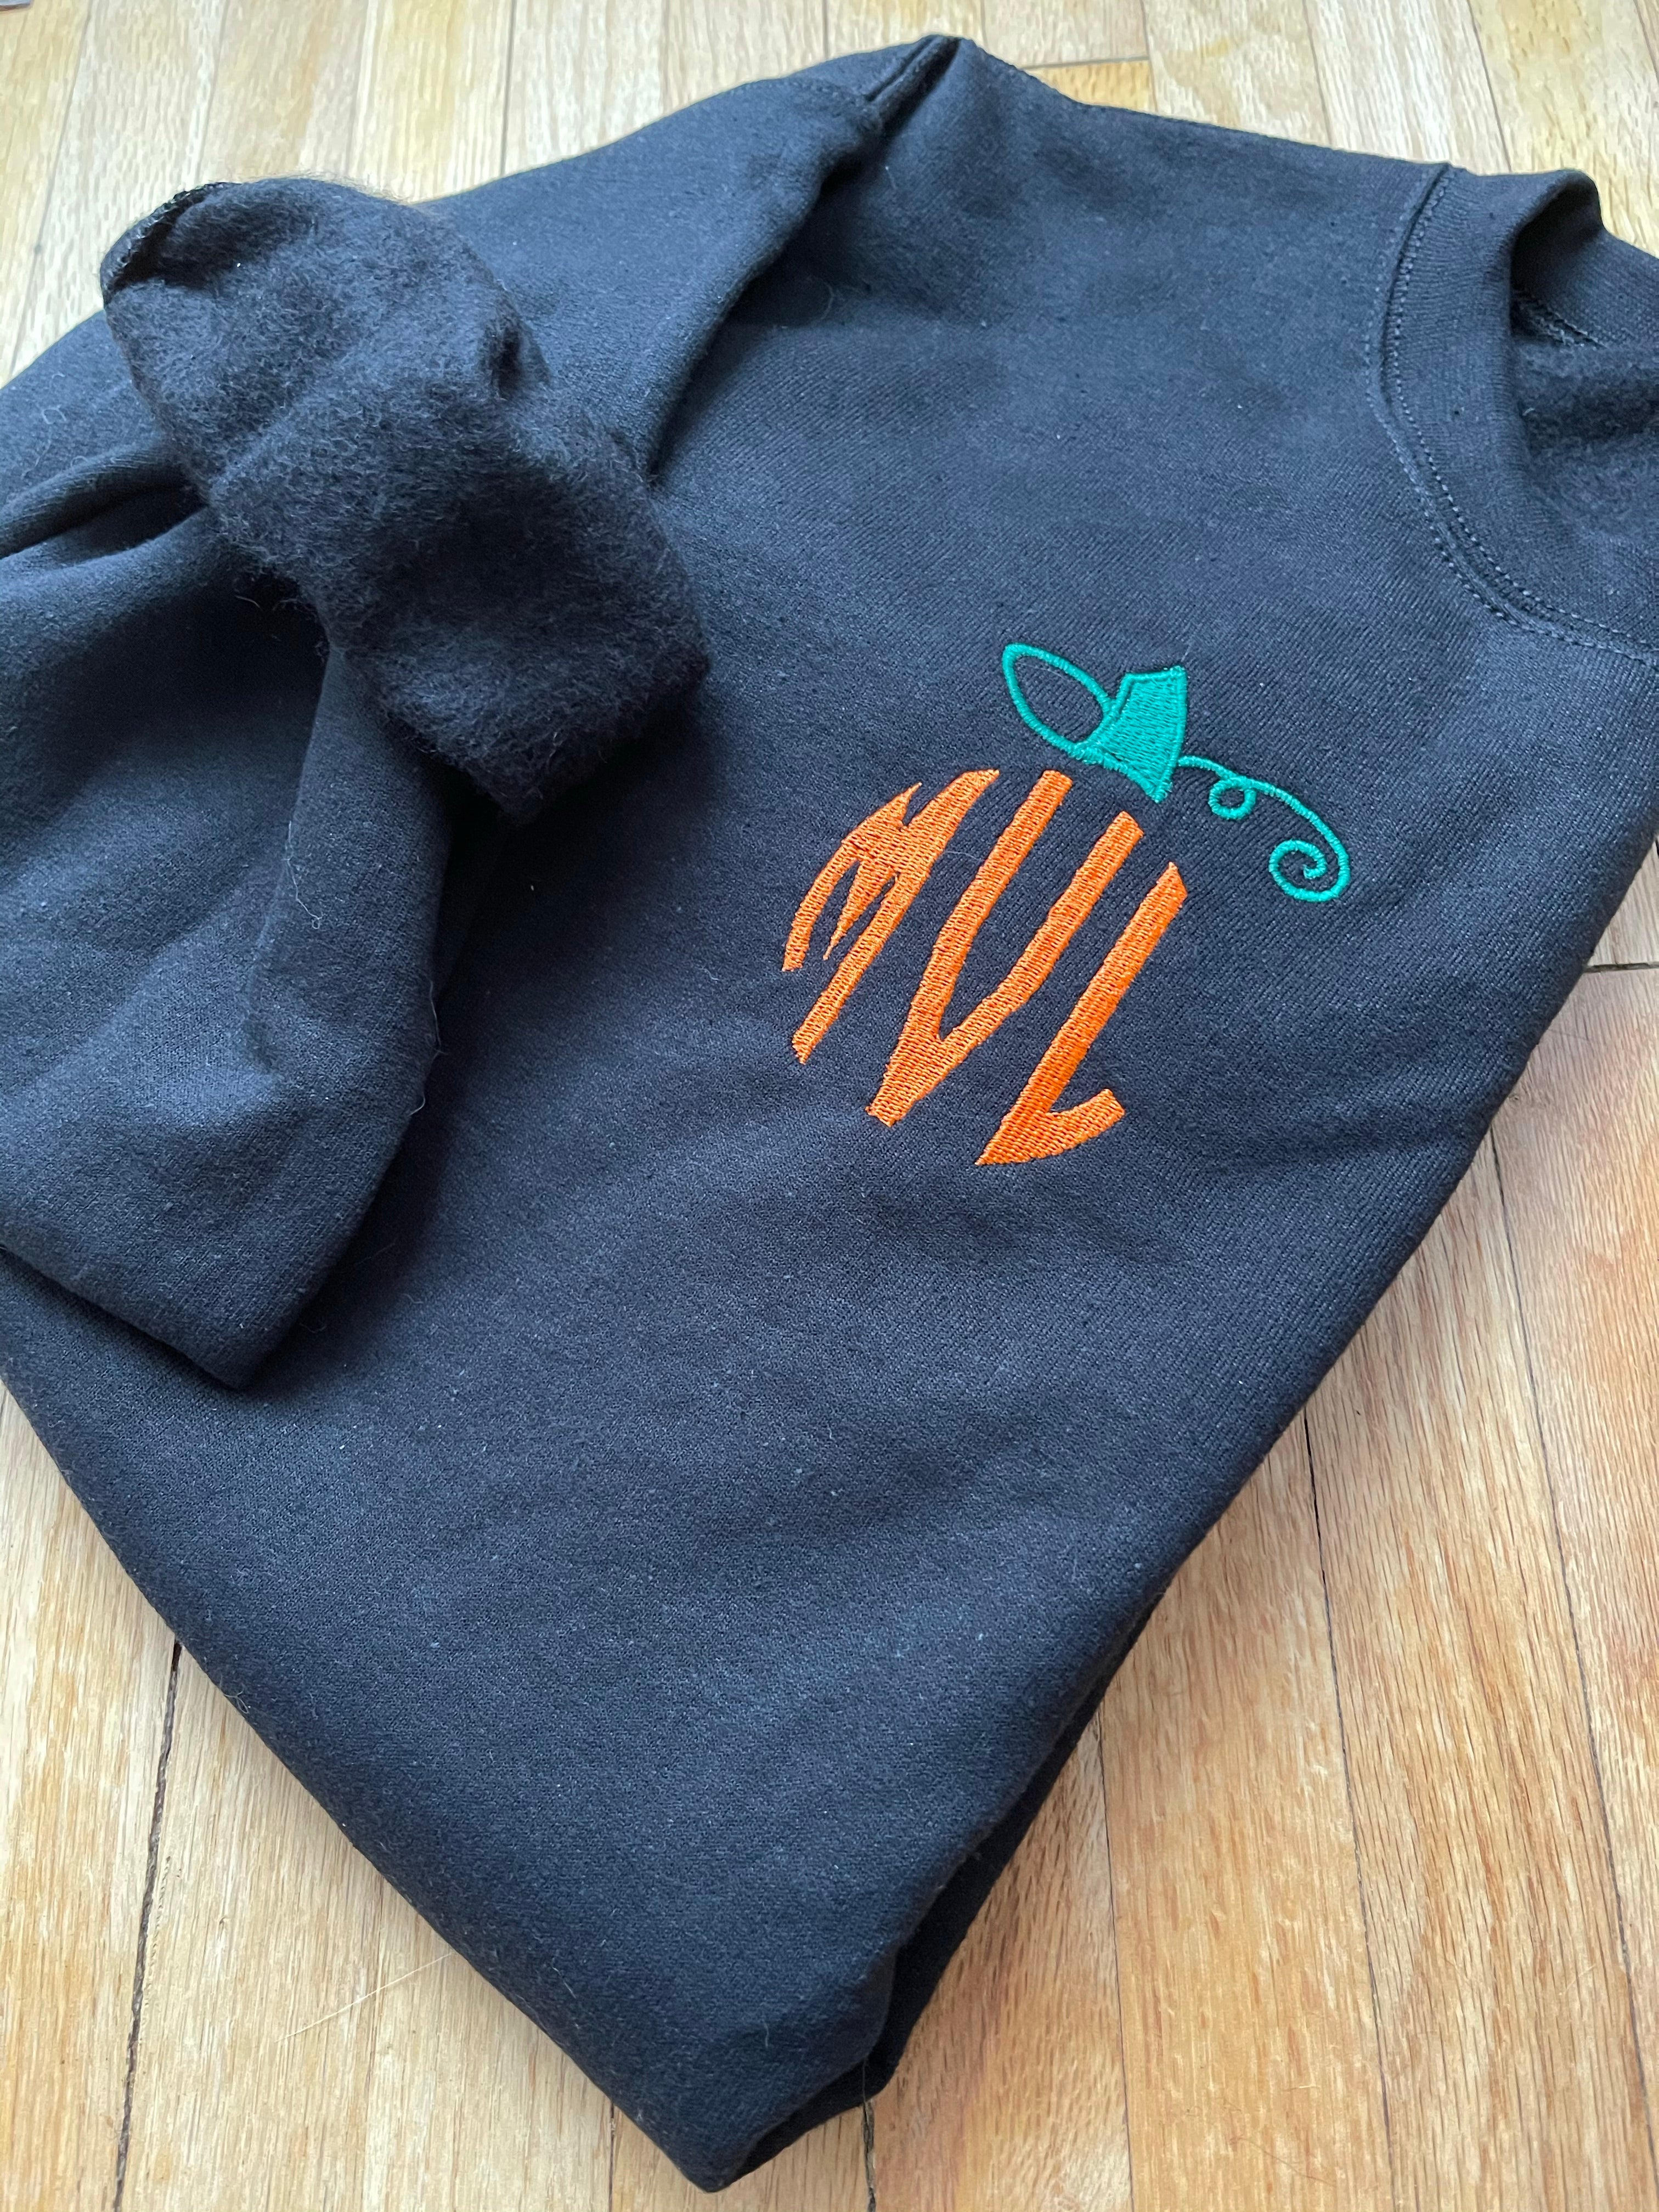 Pumpkin Monogram Embroidered Sweatshirt